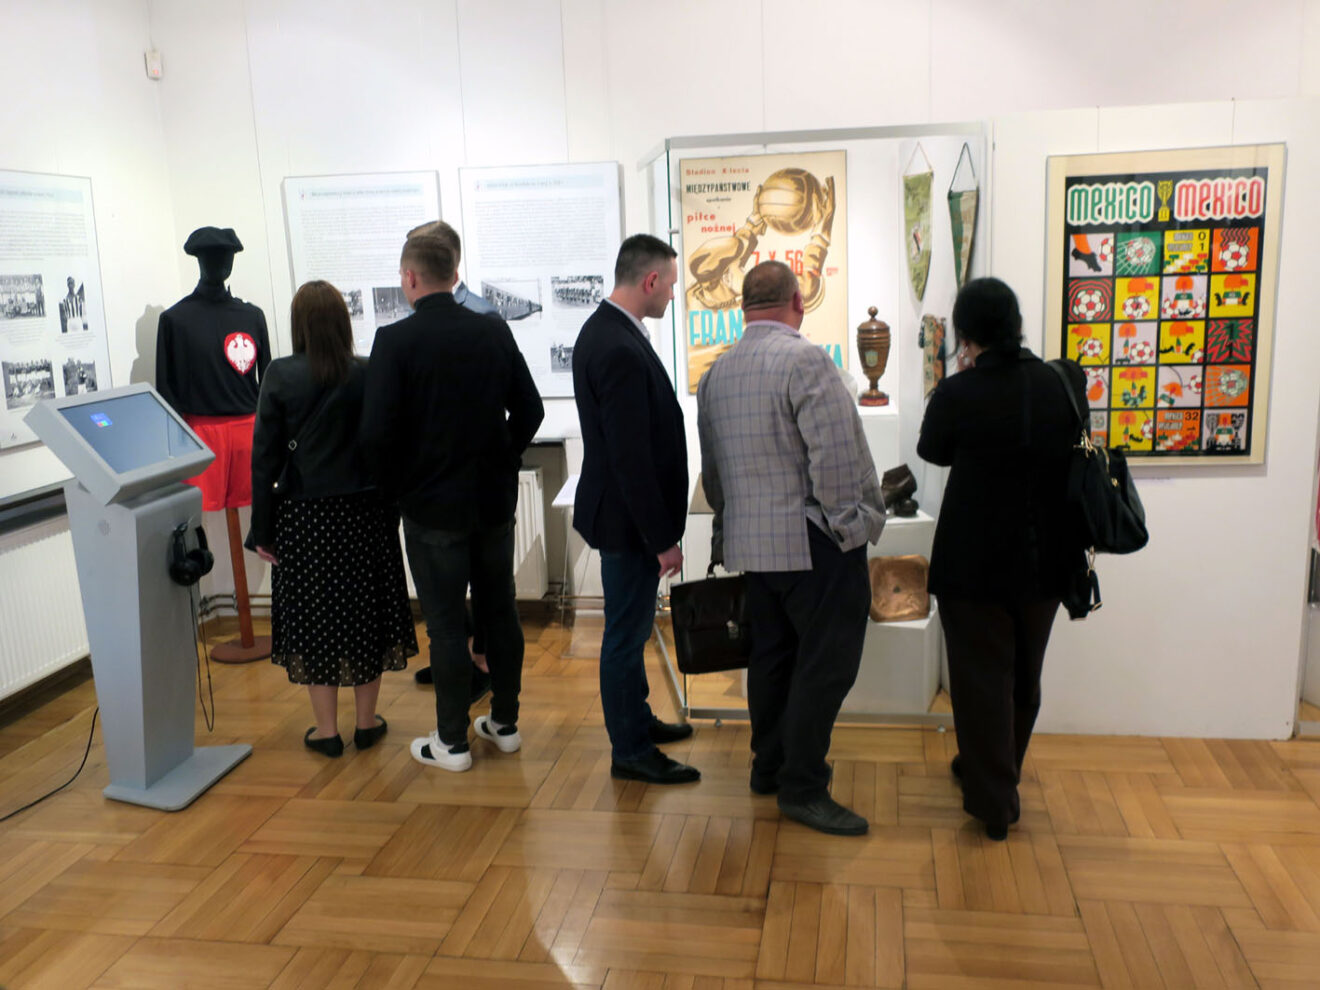 Grupa osób zwiedzających wystawę.